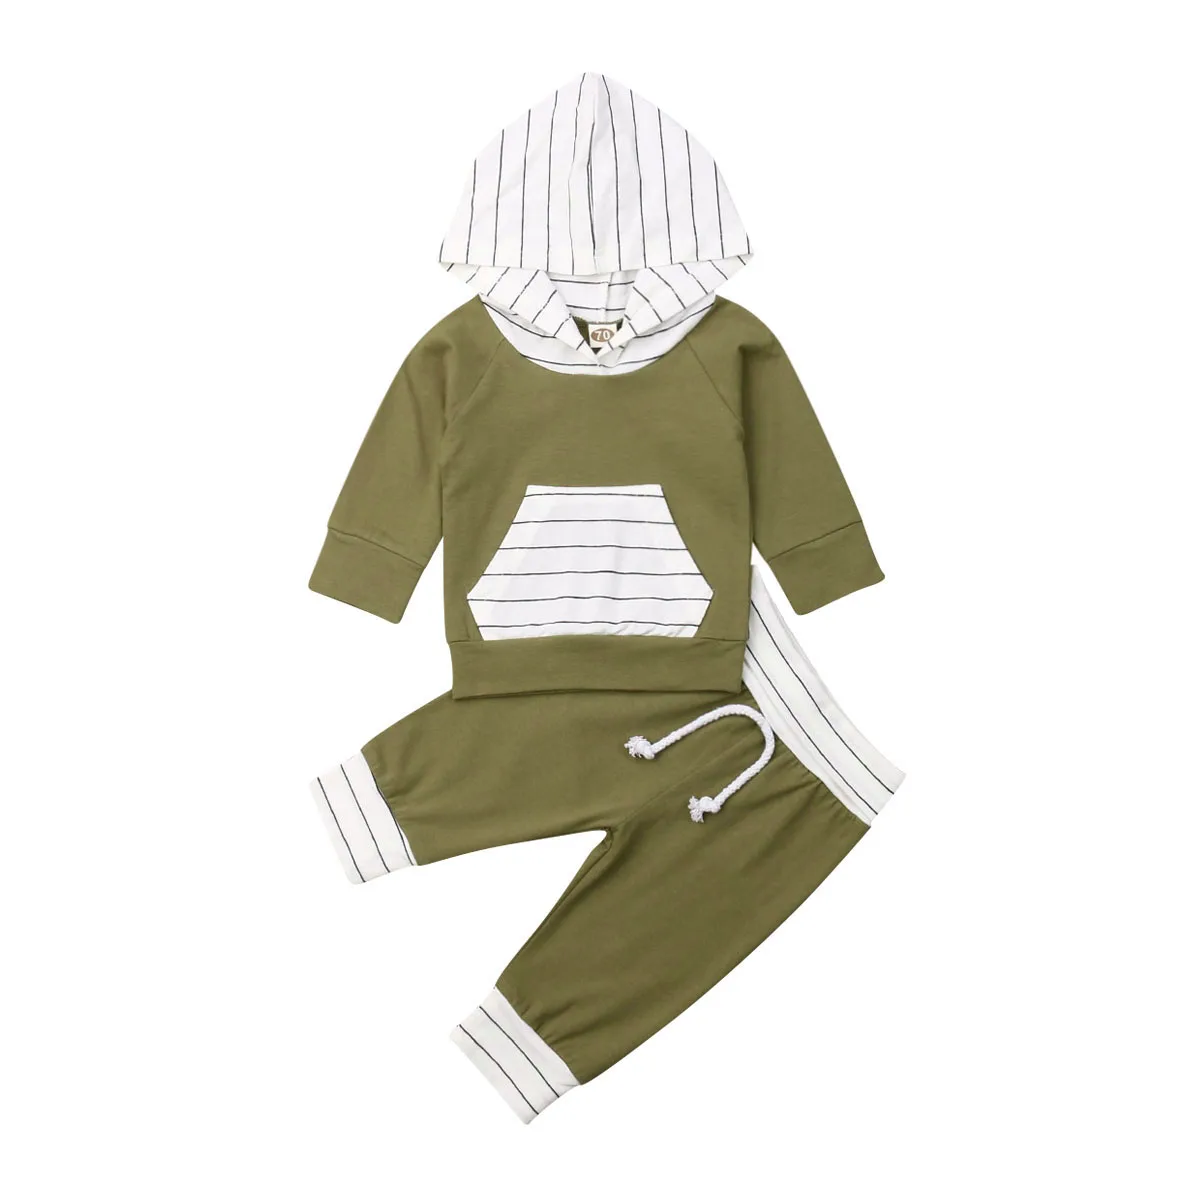 Топы с капюшоном и длинными рукавами для новорожденных мальчиков и девочек от 0 до 24 месяцев, длинные штаны, комплект из 2 предметов комплект осенней одежды - Цвет: Зеленый